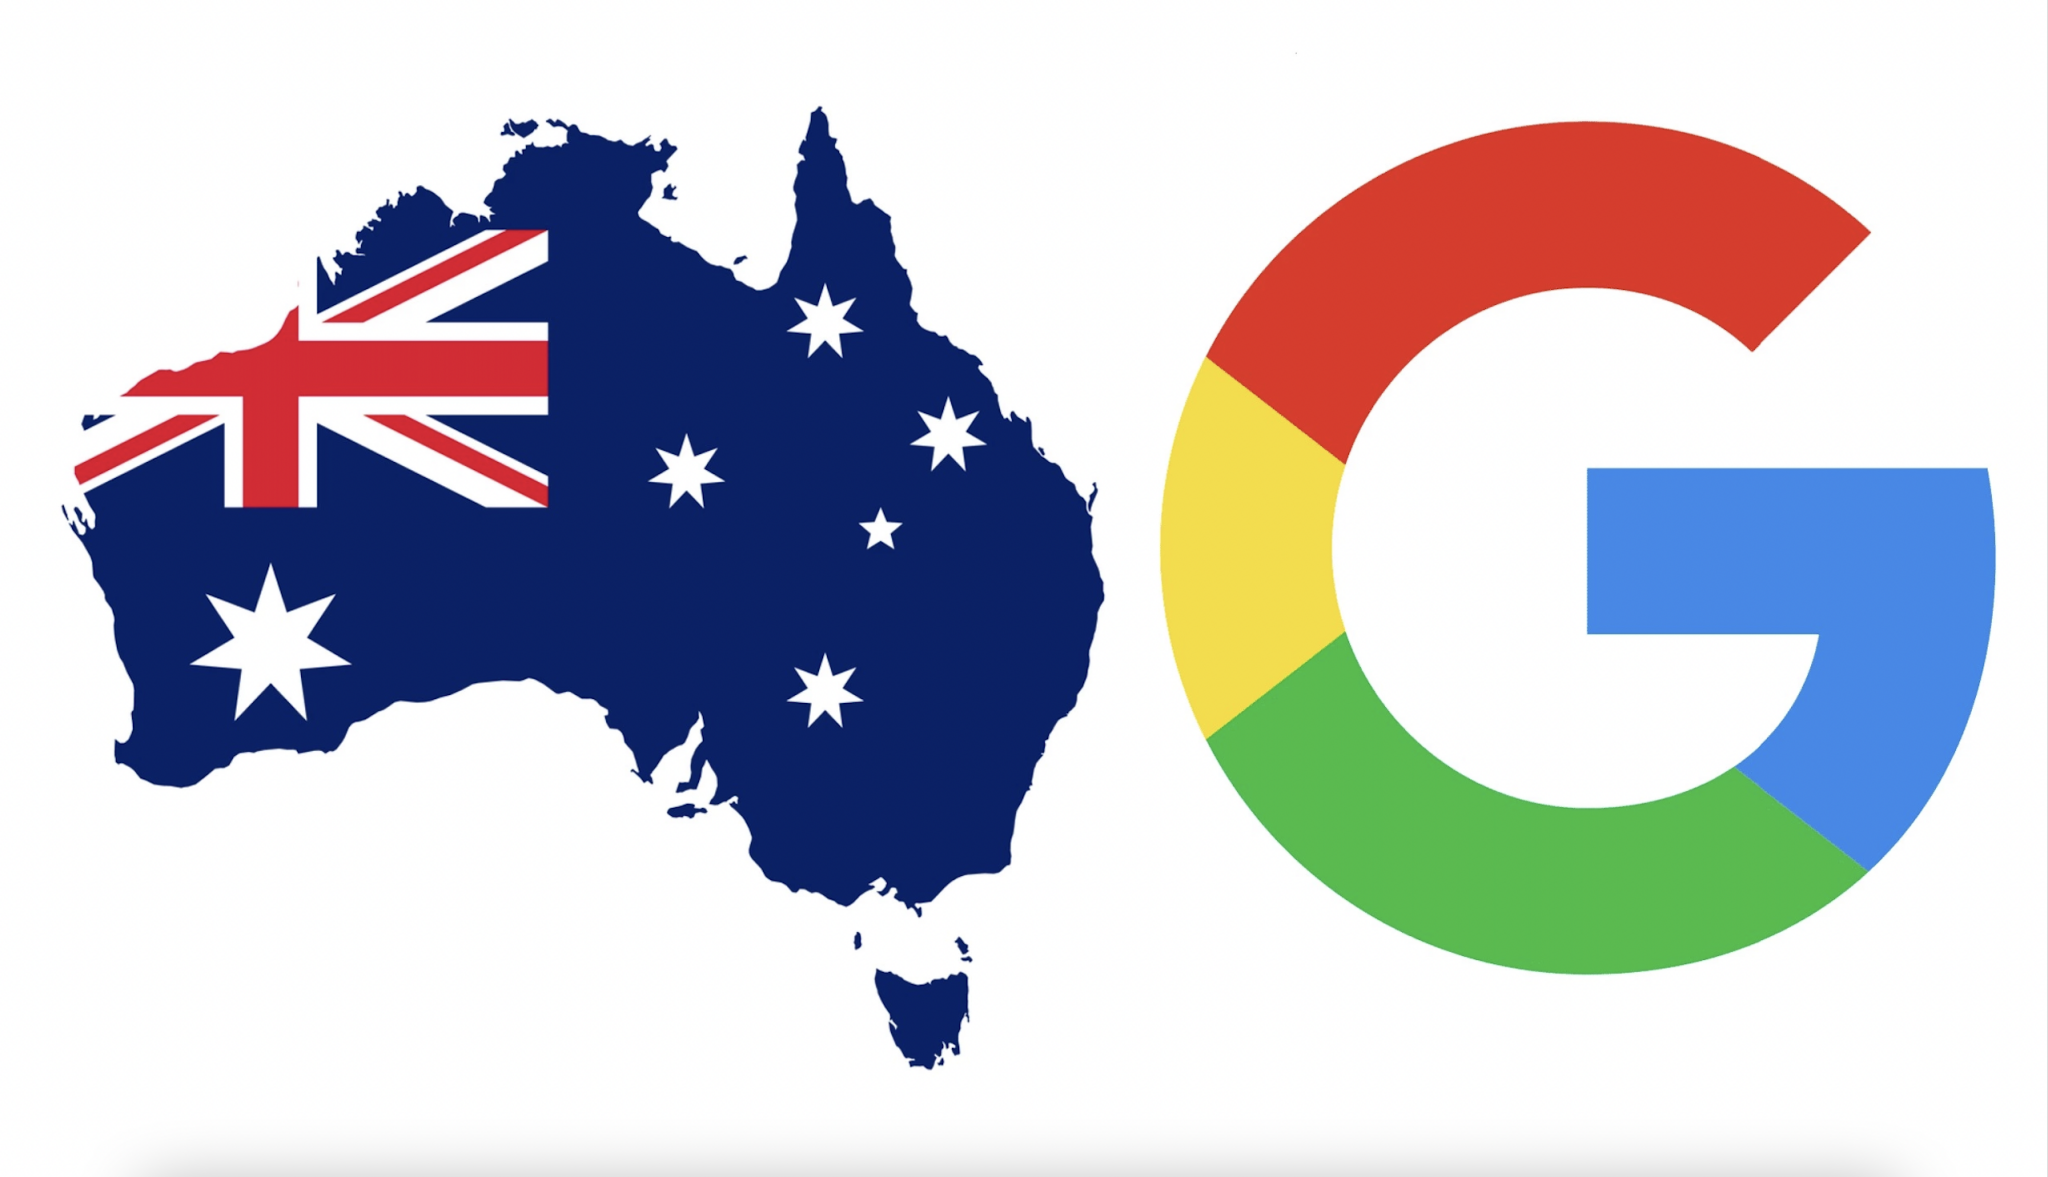 Licencování obsahu s Googlem a Facebookem podepsal už třetí australský mediální gigant